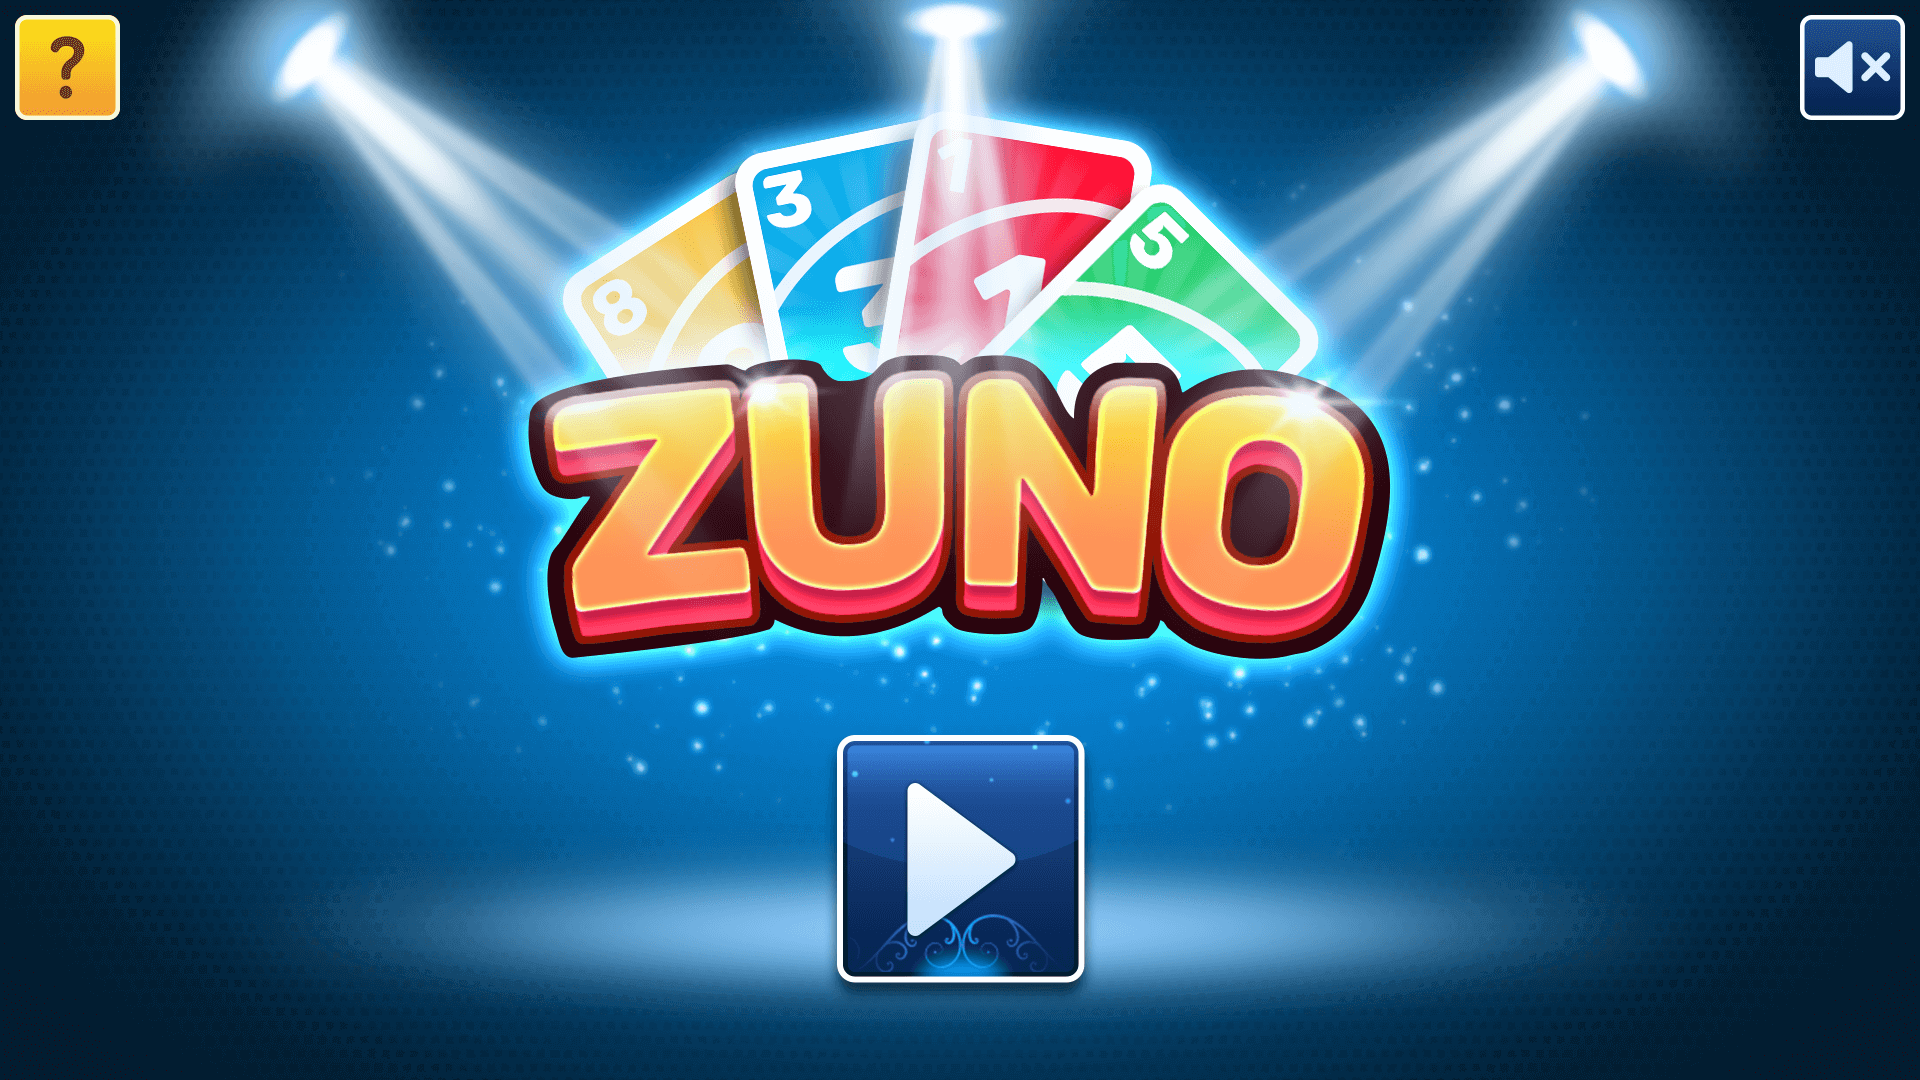 ZUNO game screenshot